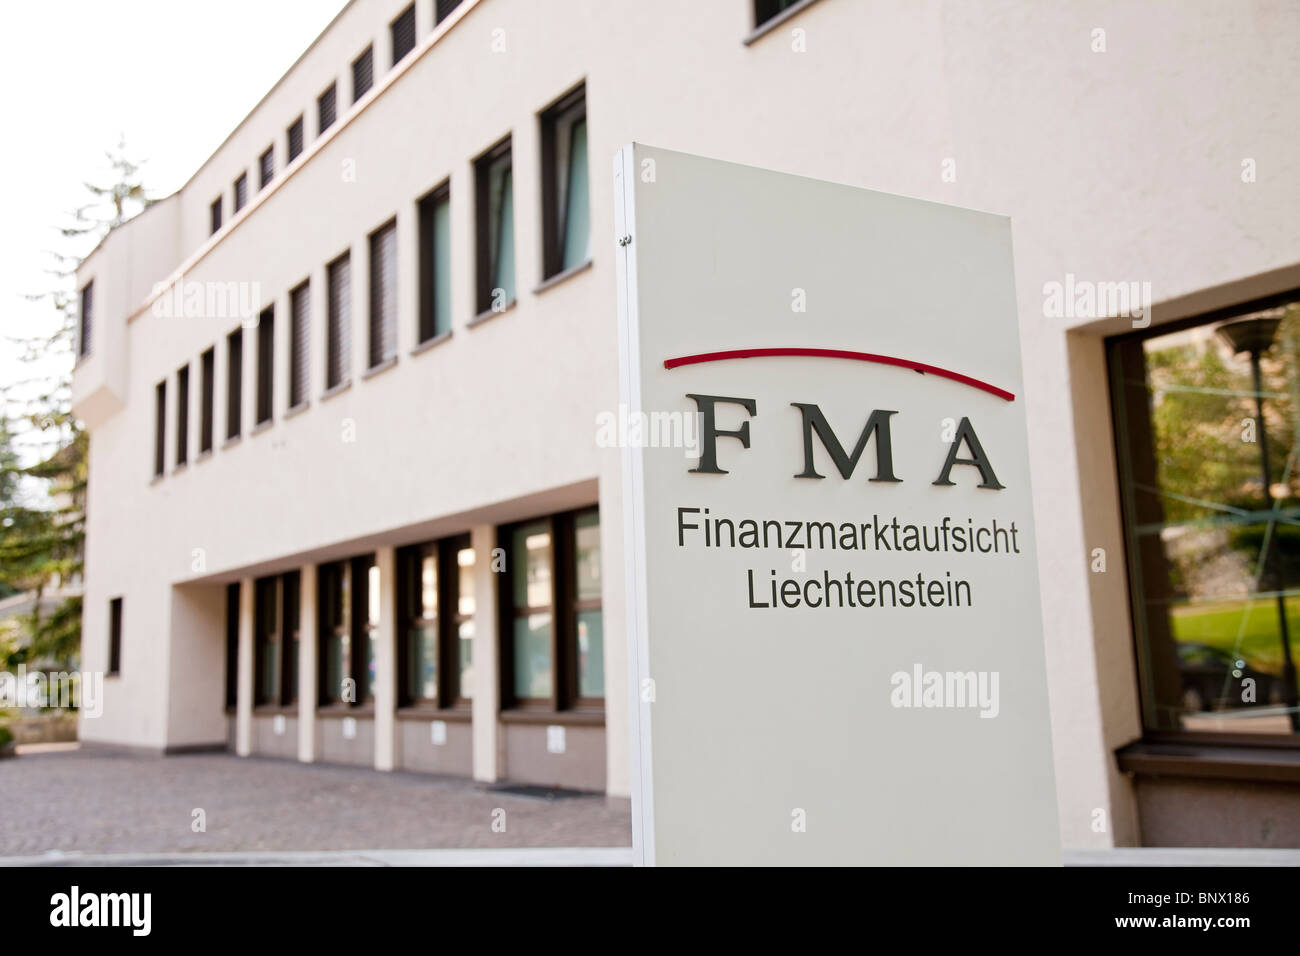 Finanzmarktaufsicht Liechtenstein ( FMA ), the financial market authority in VADUZ Stock Photo